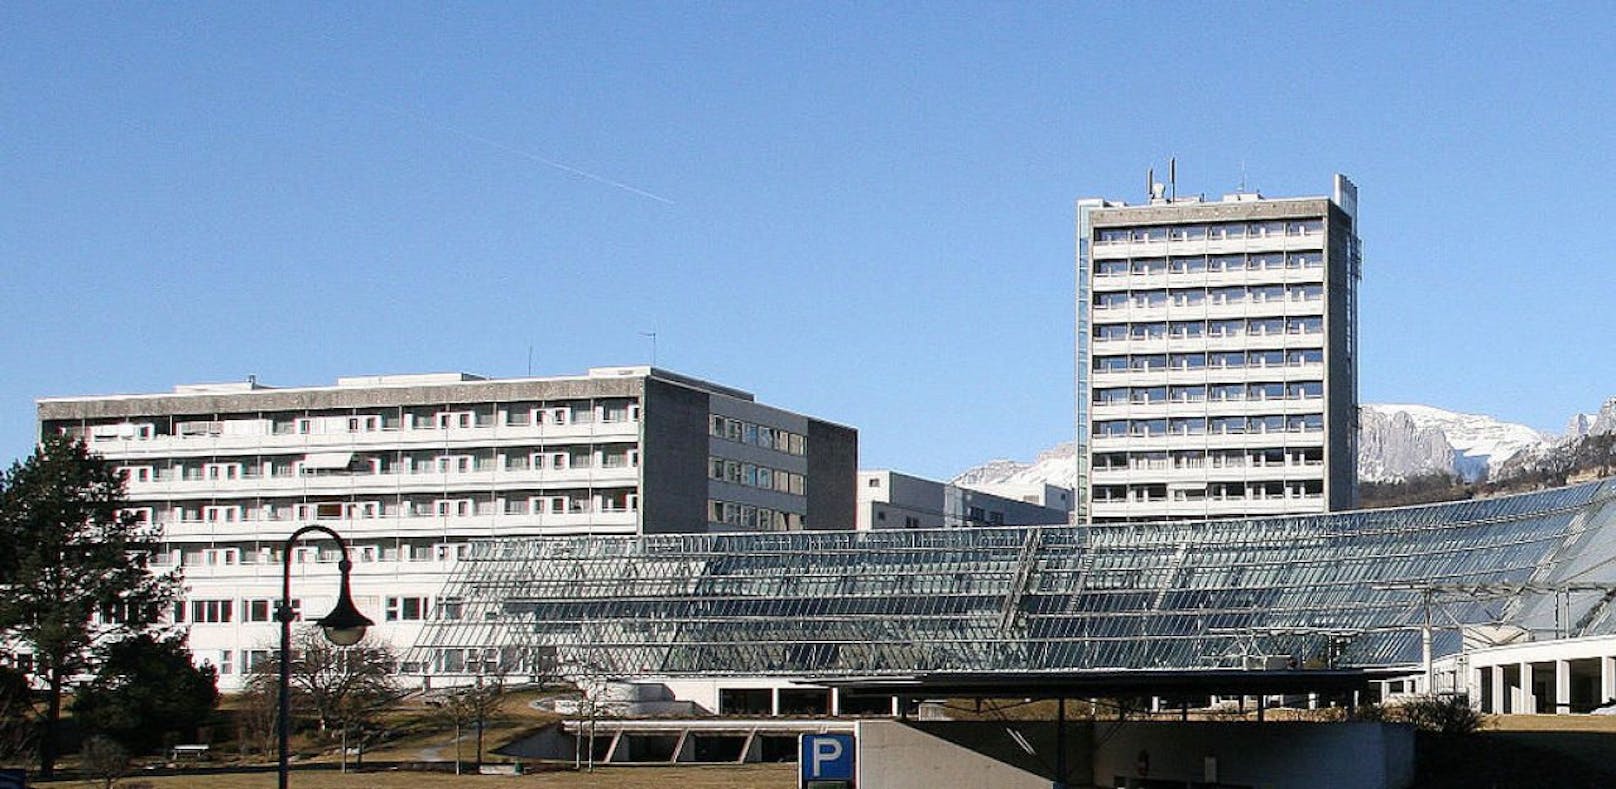 Das Spital in Feldkirch: Häftling ist auf der Flucht.